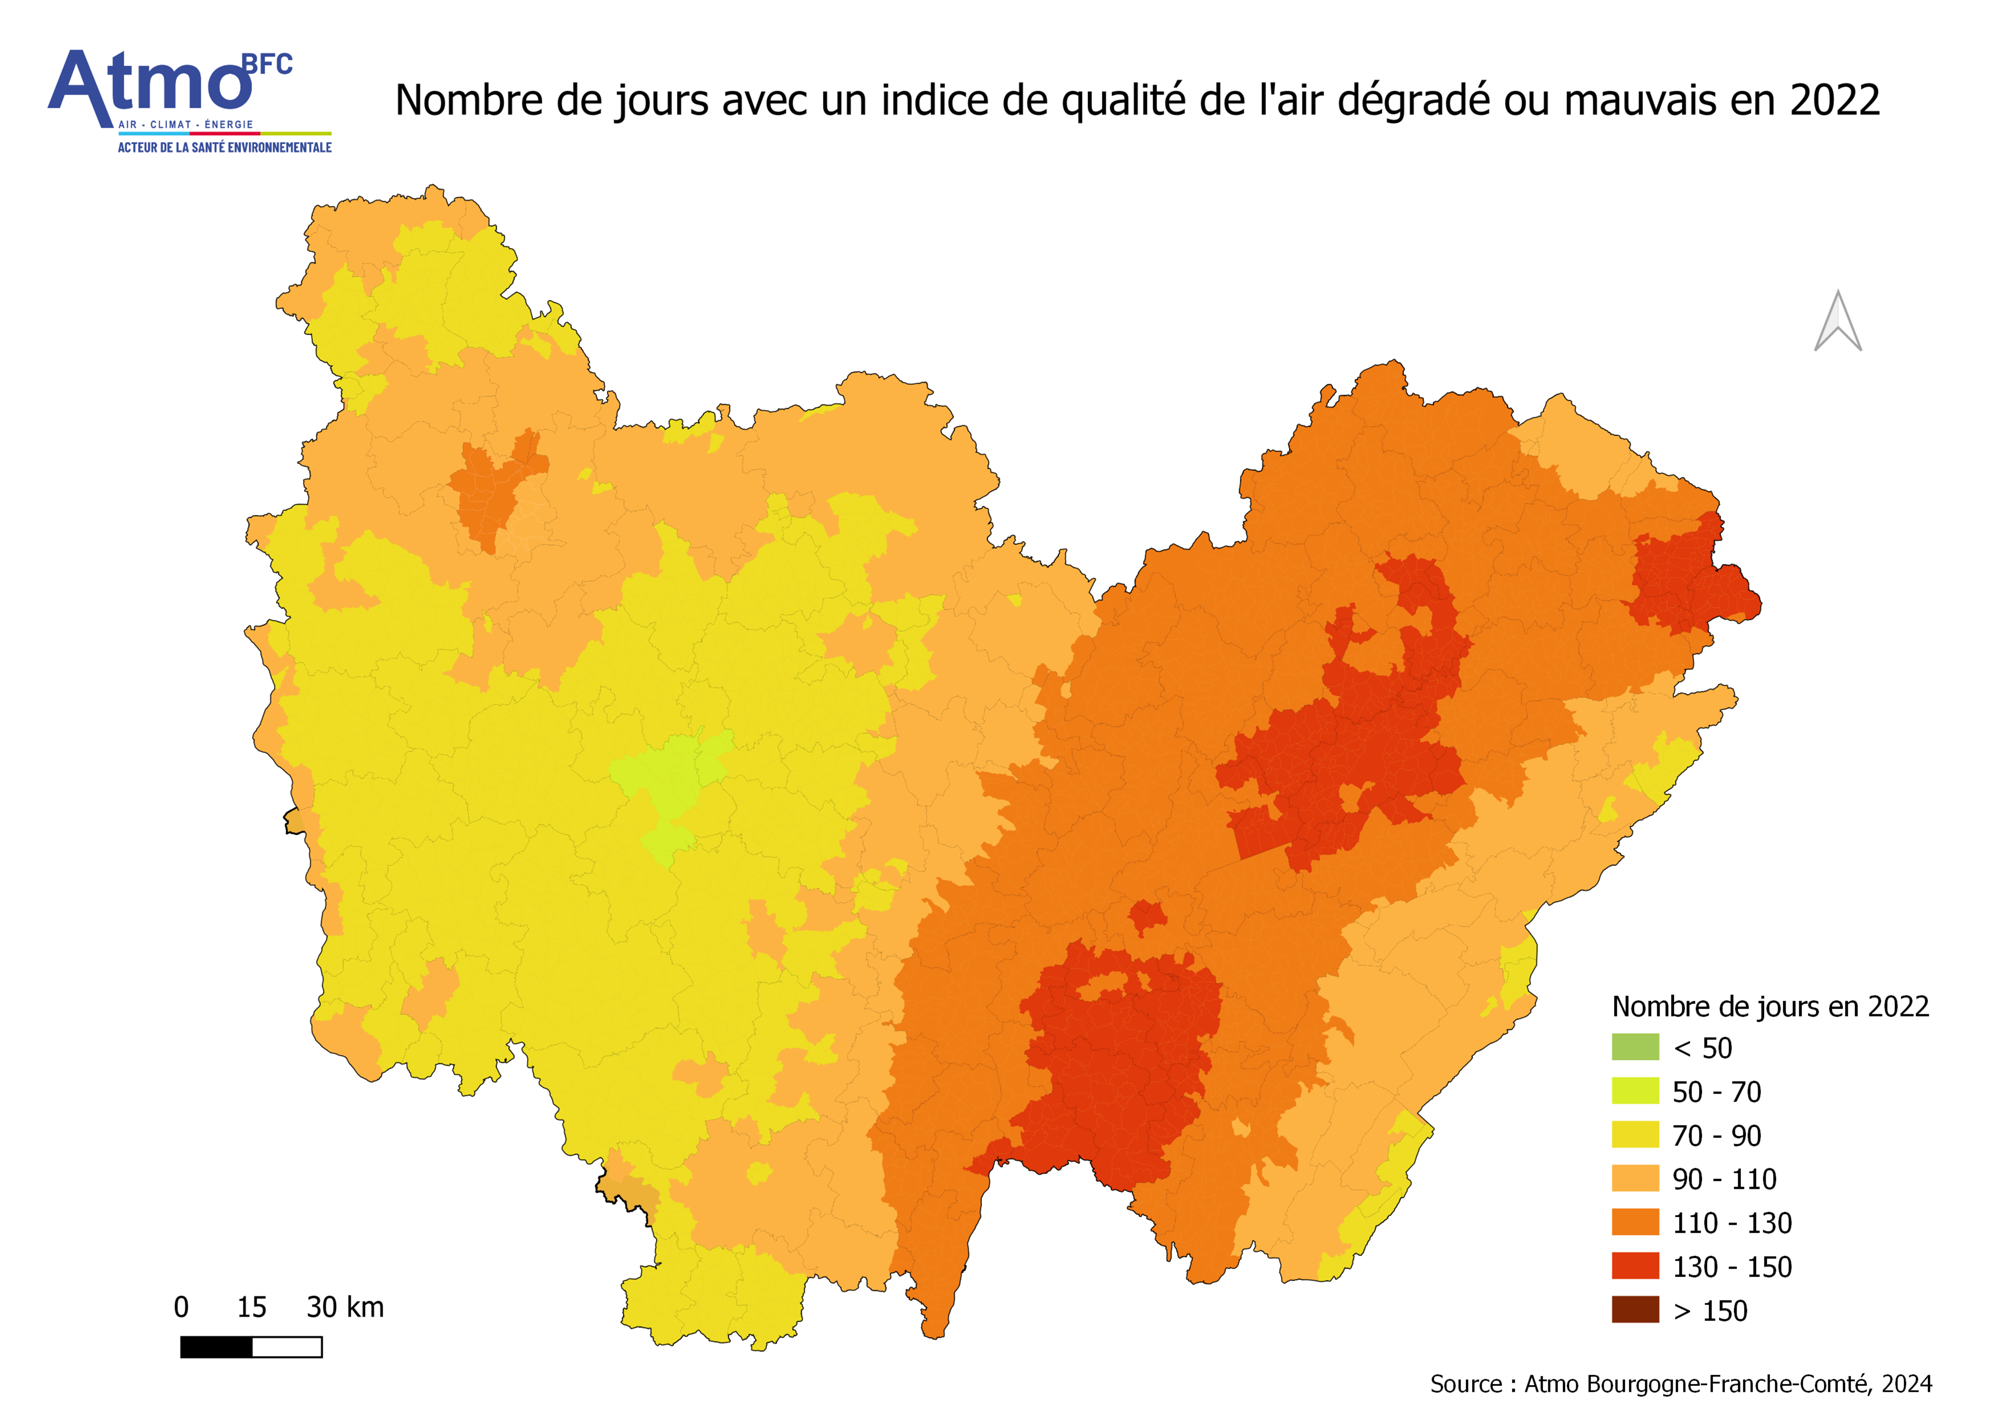 Nombre de jours avec un indice de qualité de l’air dégradé ou mauvais par commune (2022)